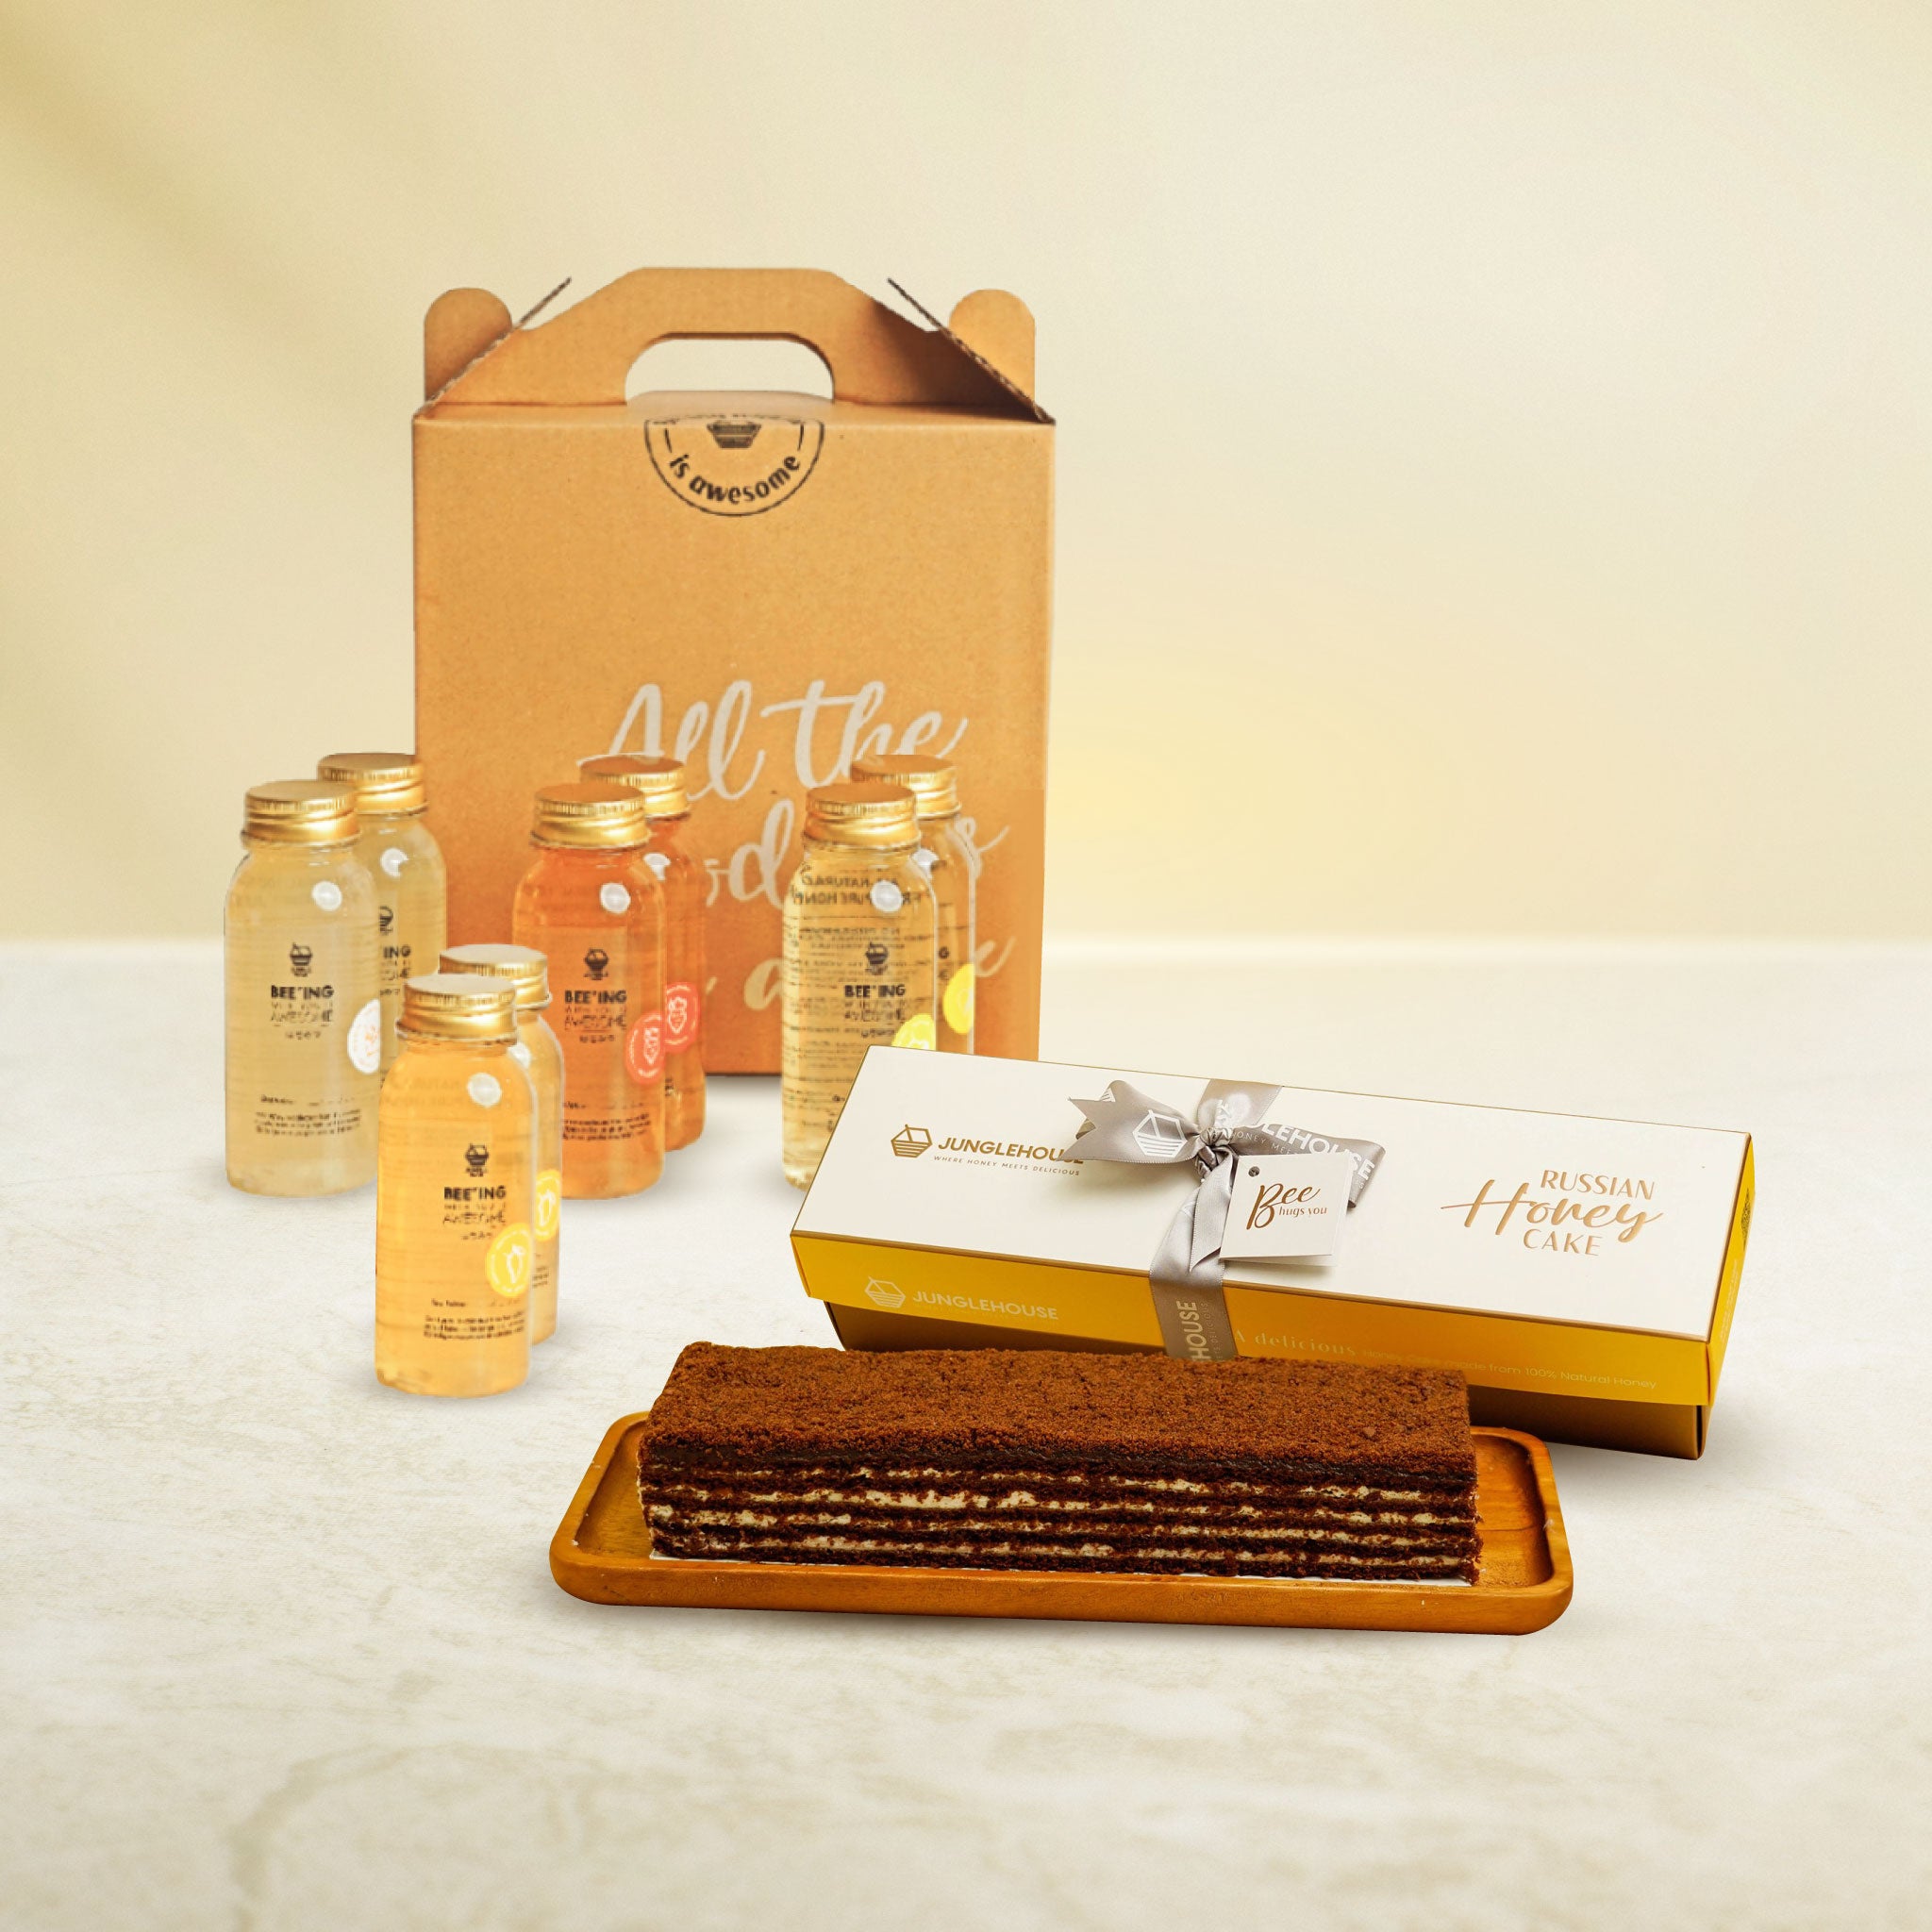 Russian Honey Cake Premium Gift Box (10 serves) + Super Immunity Honey Juice Pack